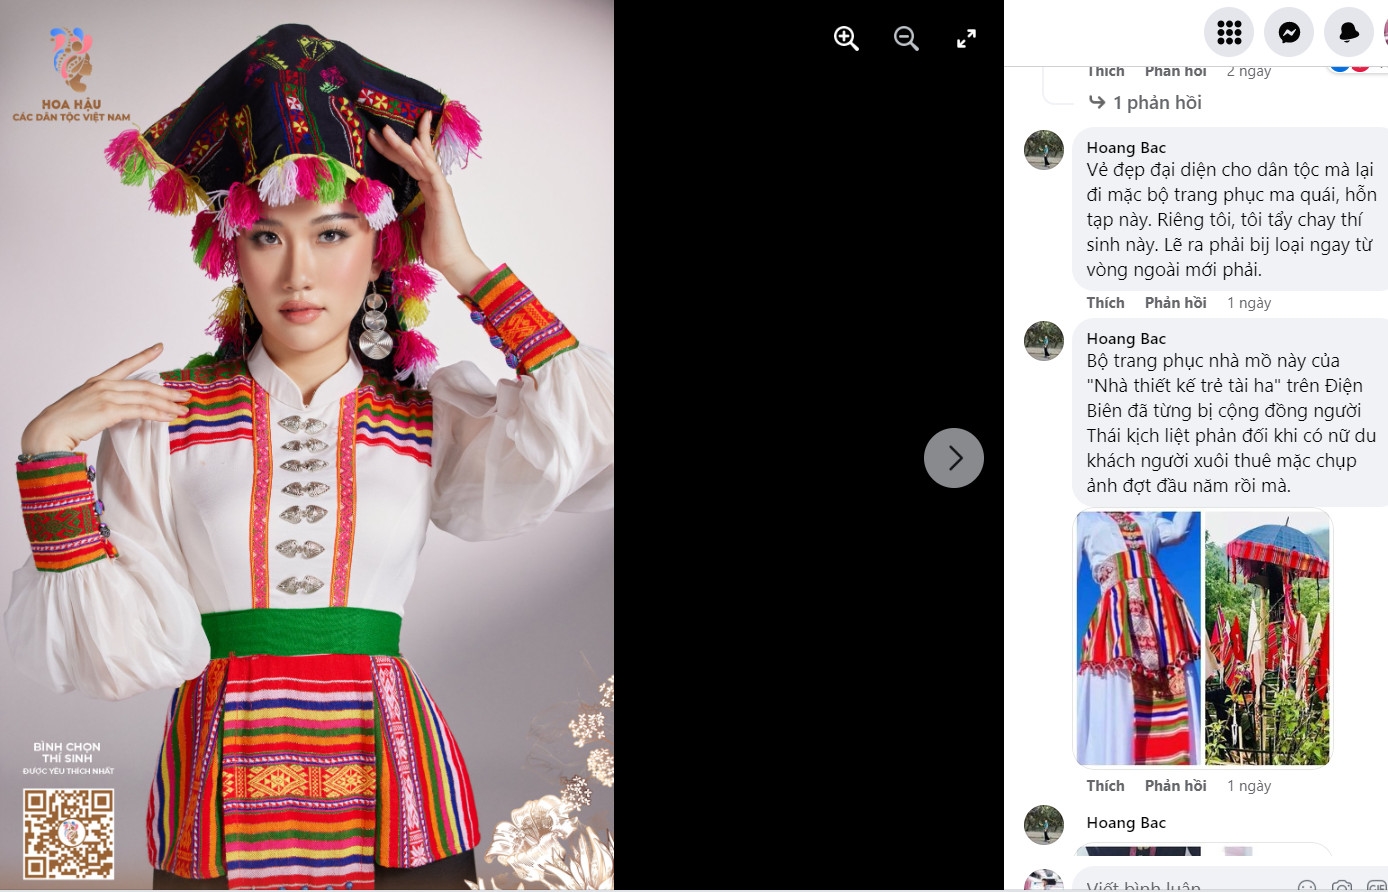 Chiếc váy Thái của thί sinh tham dự cuộc thi Hoa hậu các dȃn tộc Việt Nam nǎm 2022 sử dụng chất liệu vải khίt thường sử dụng trong trang trί nhà mồ của người Thái